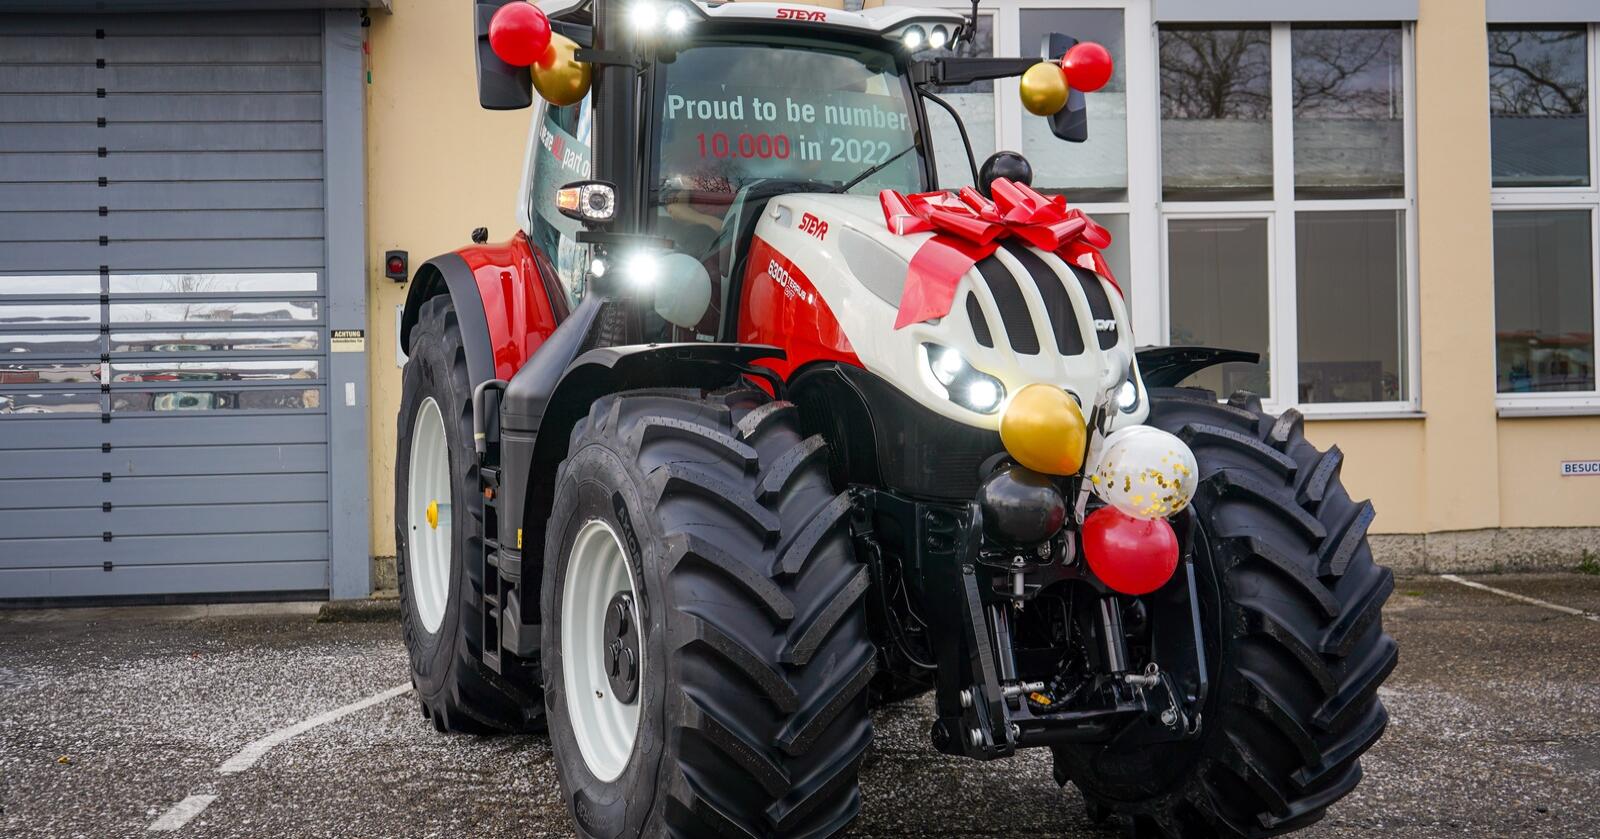 Rekord: Selv om året har vært utfordrende, har fabrikken i St. Valentin klart å produsere 10 000 traktorer.